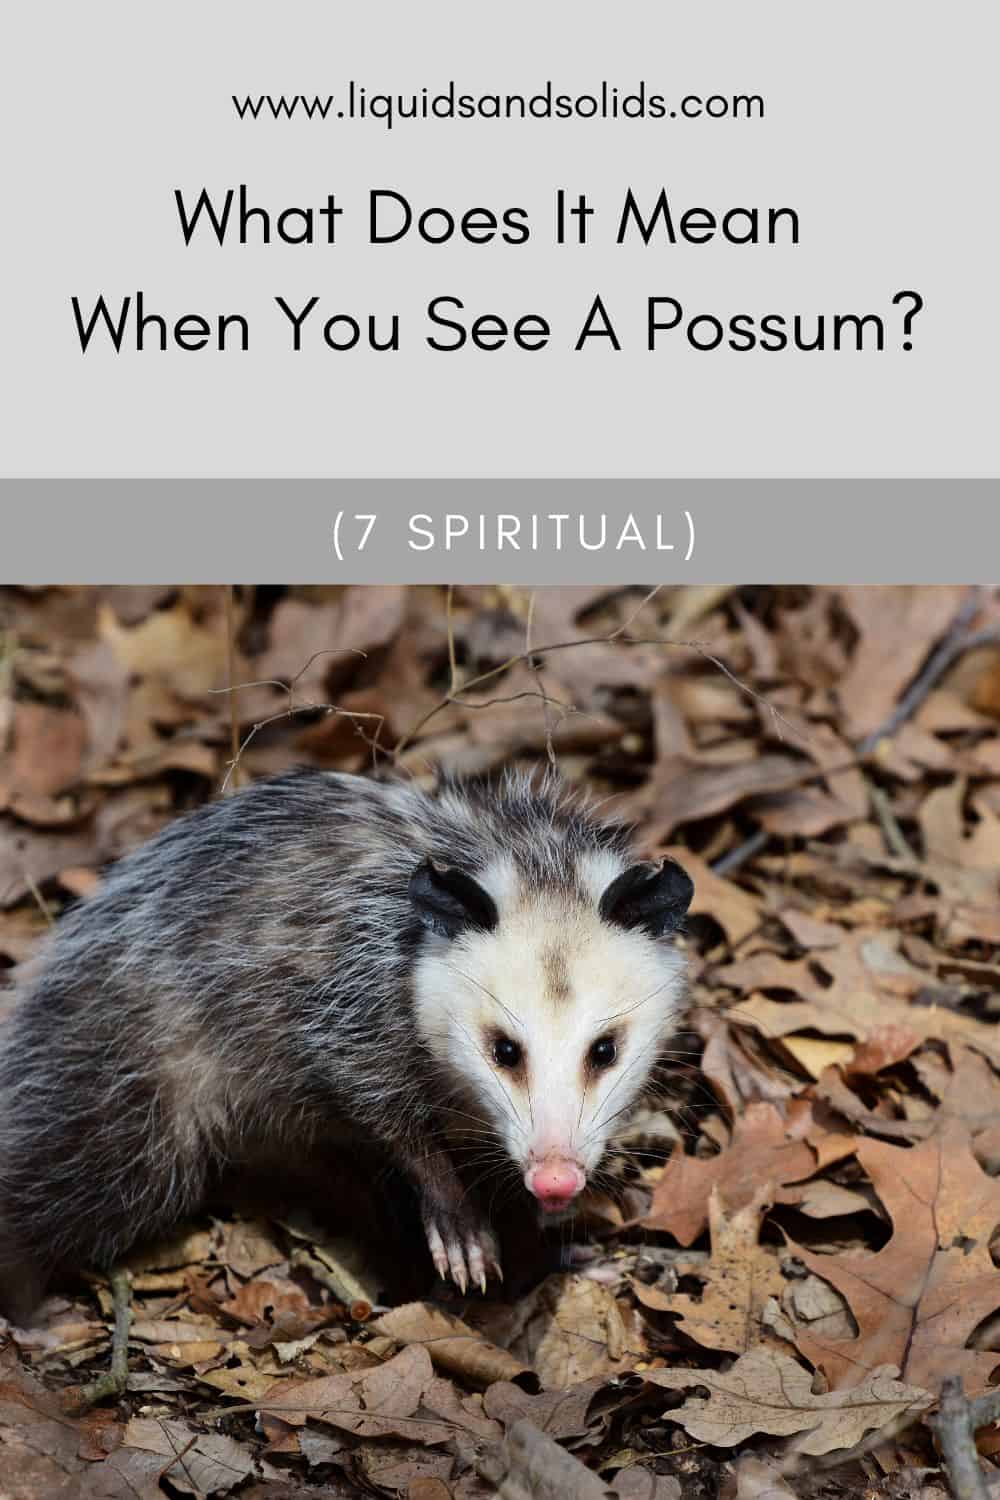  ມັນຫມາຍຄວາມວ່າແນວໃດເມື່ອທ່ານເຫັນ Possum? (7 ຄວາມ​ຫມາຍ​ທາງ​ວິນ​ຍານ​)